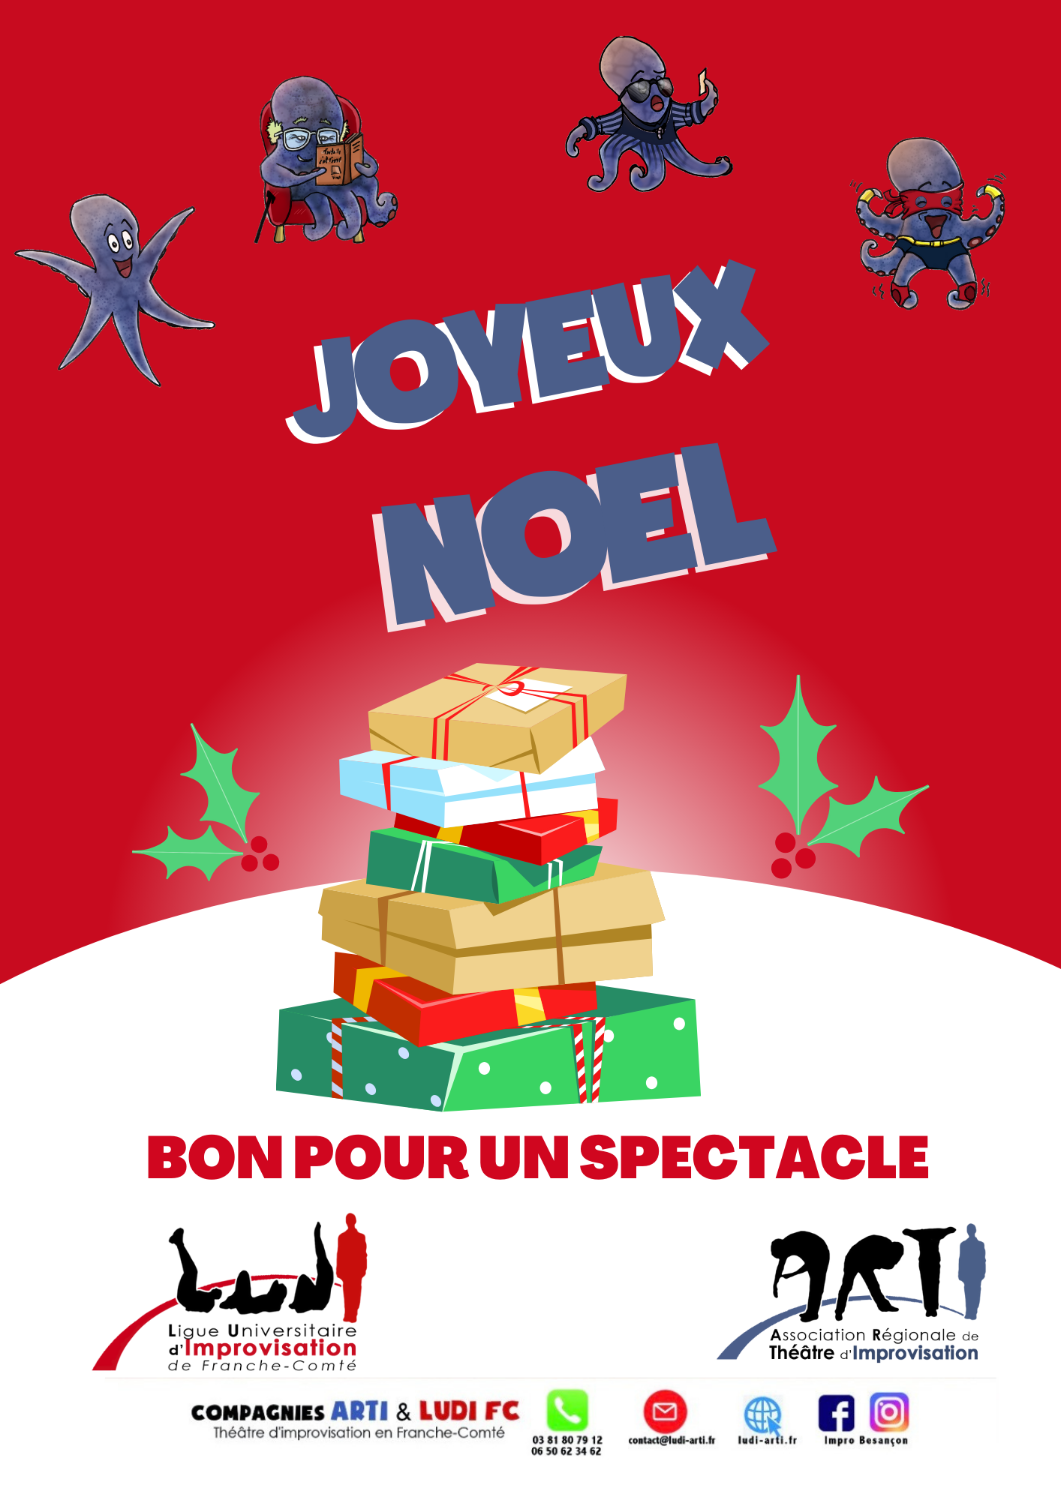 JOYEUX NOEL - Bons cadeaux